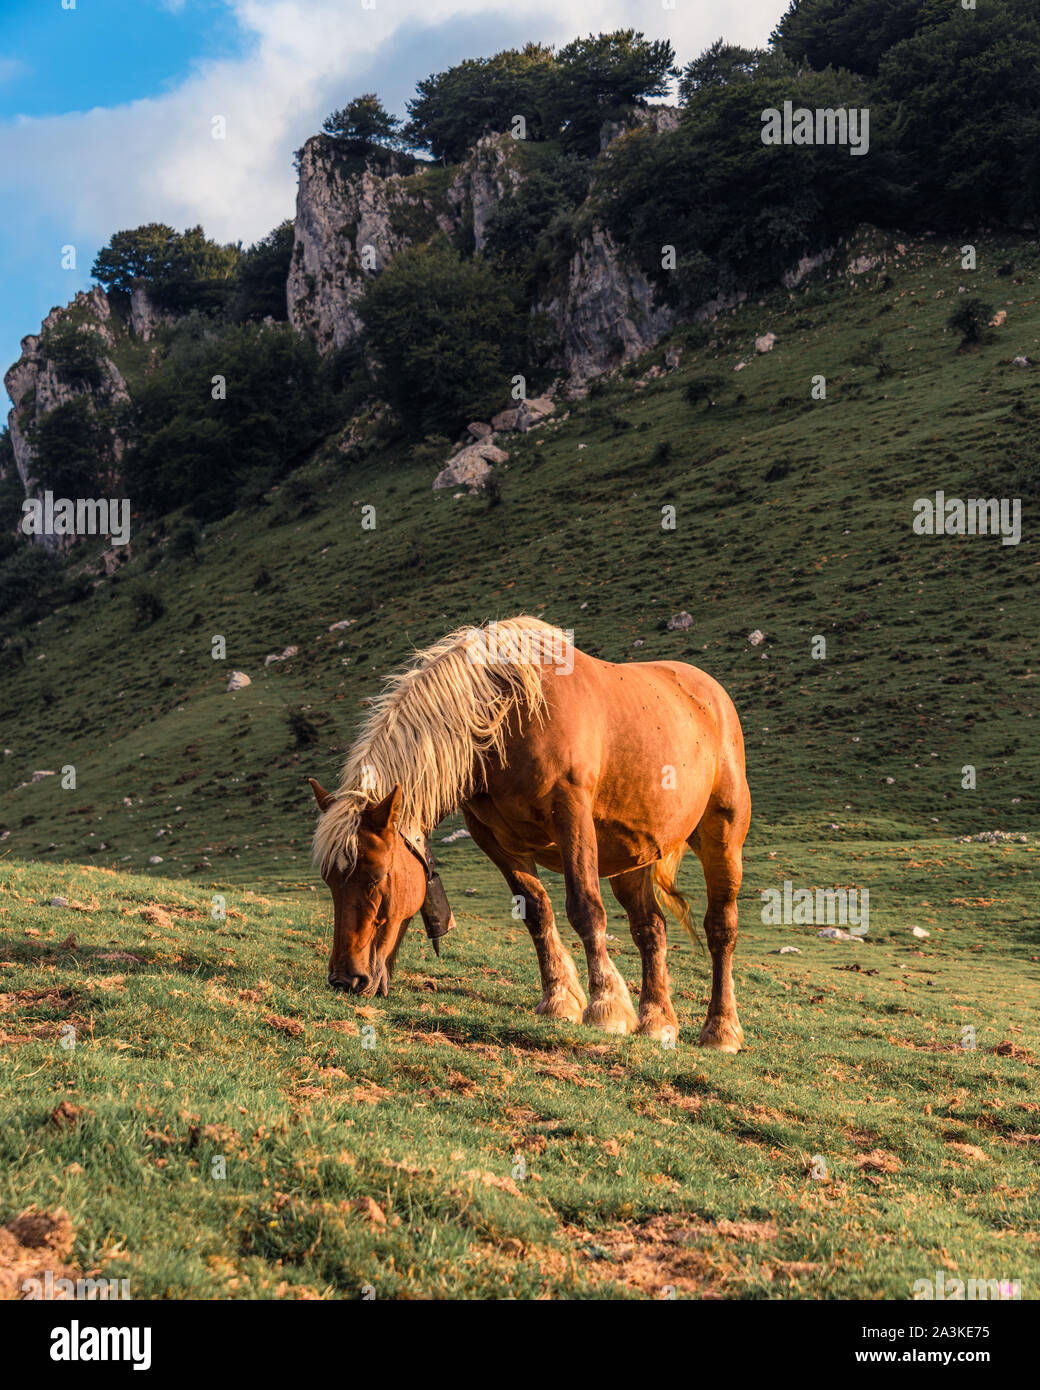 21/8-19, Mugarra, Pays basque, Espagne. Un beau cheval est le pâturage dans le parc naturel Urkiola, près du sommet du Mugarra. Banque D'Images